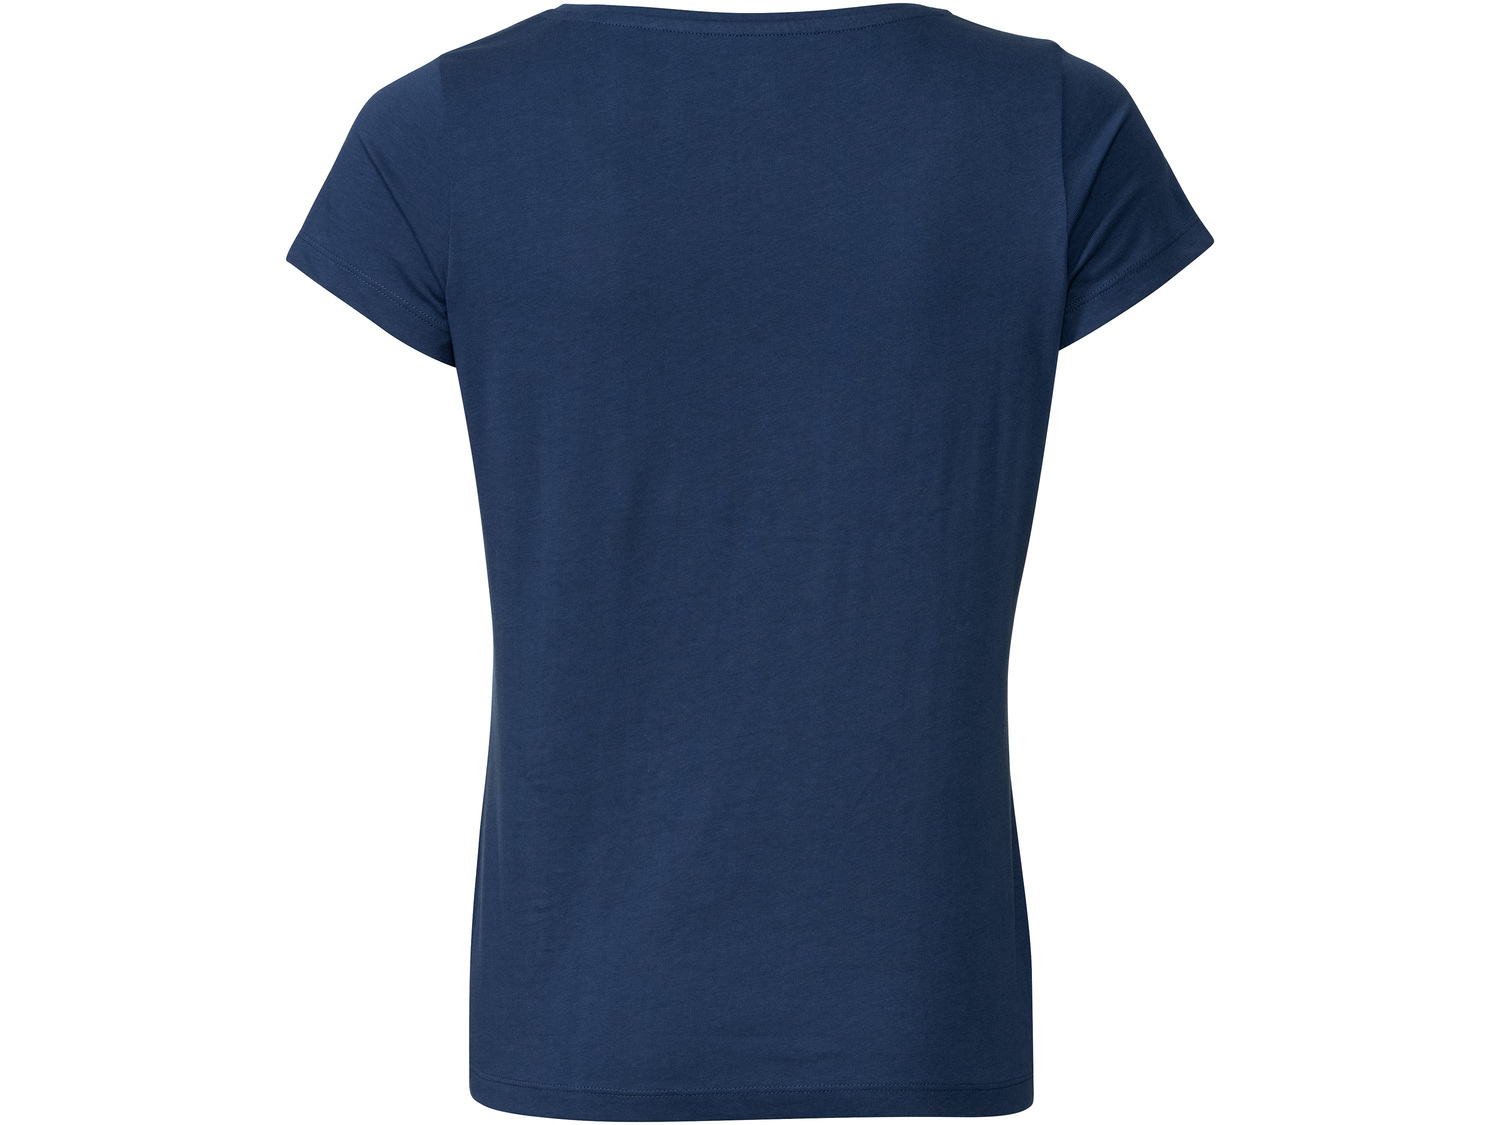 Koszulka damska z bawełny Esmara, cena 19,99 PLN 
- 100% bawełny
- rozmiary: S-L
Dostępne ...